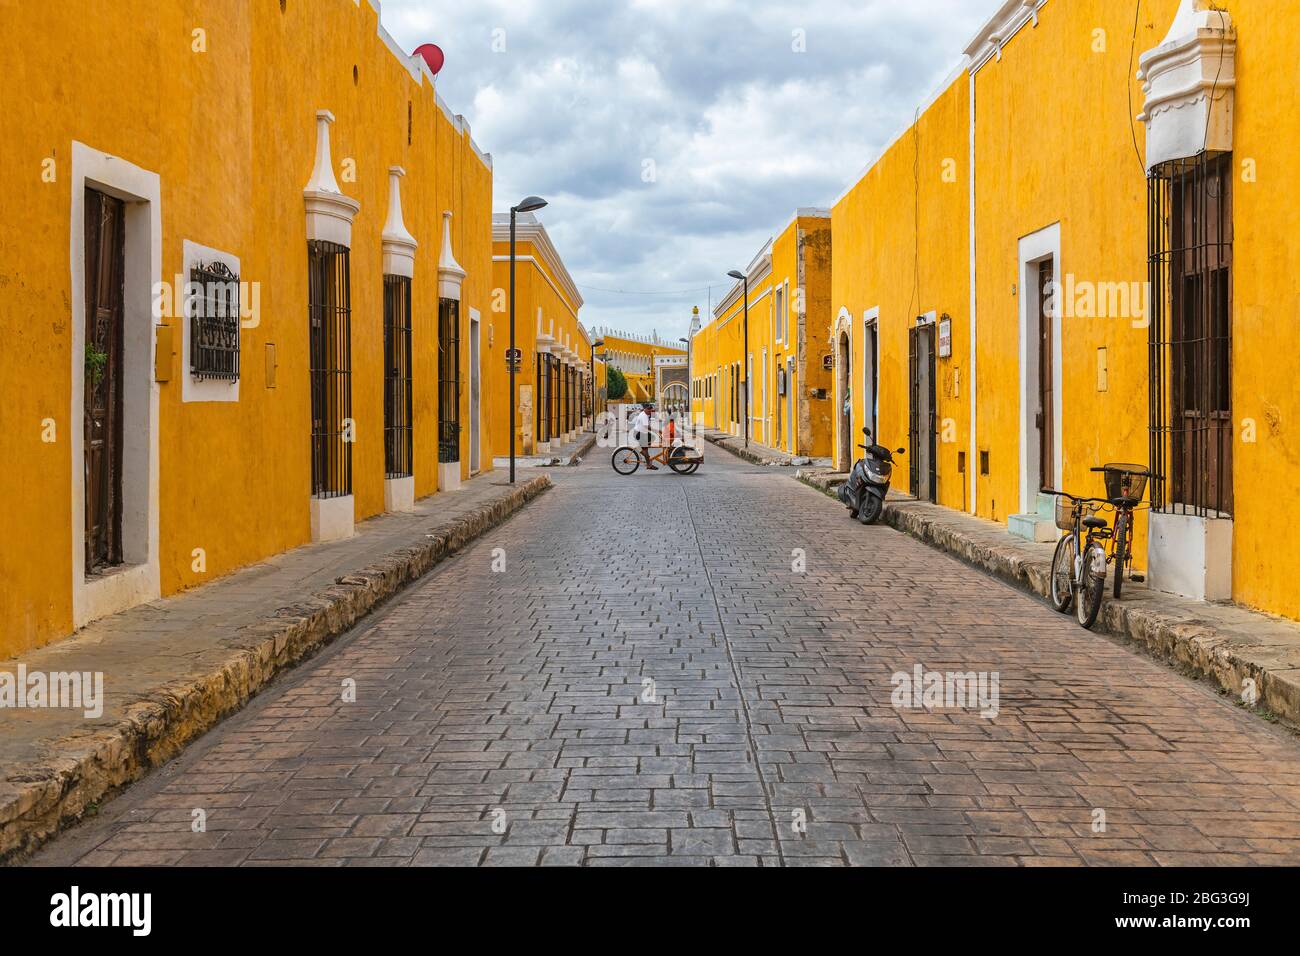 Stadtbild mit Menschen auf einem Dreirad in den bunten gelben Straßen mit kolonialer Architektur, Izamal, Mexiko. Stockfoto